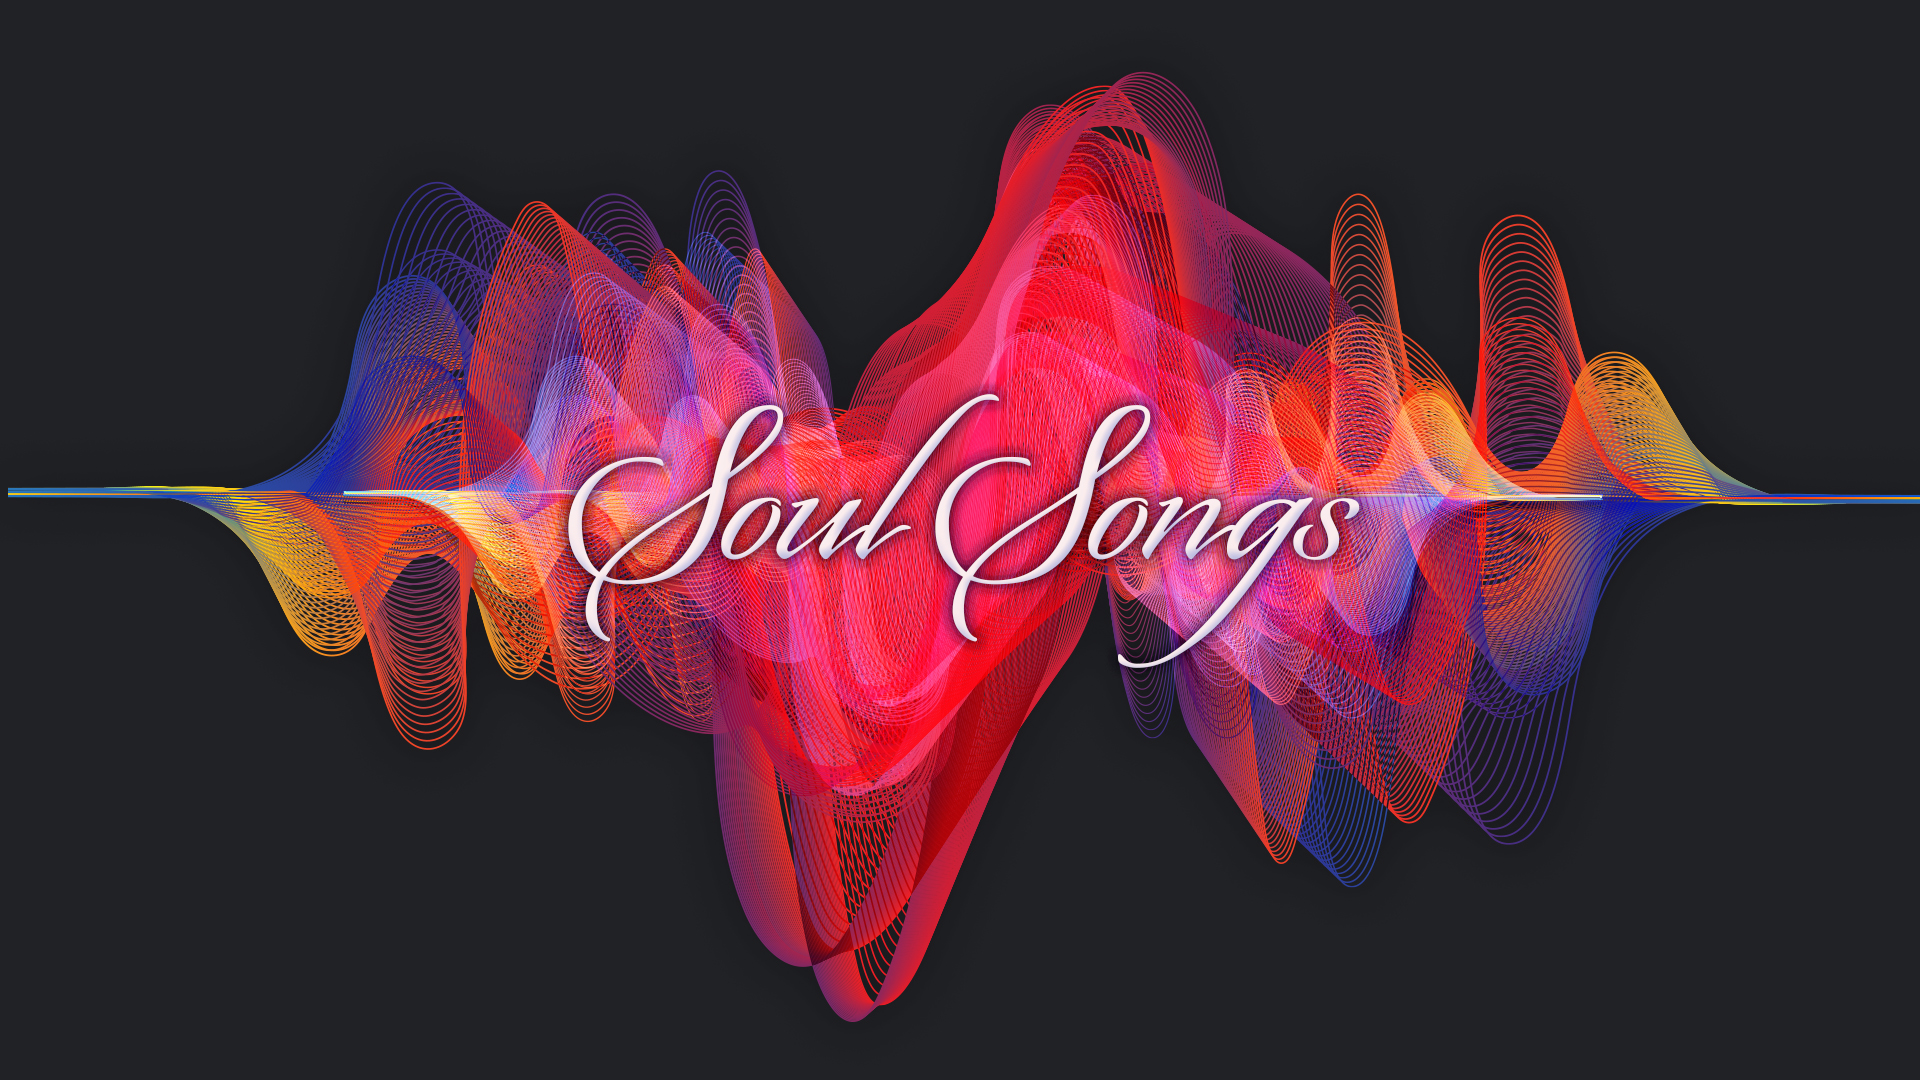 "Soul Songs" Sermon Series